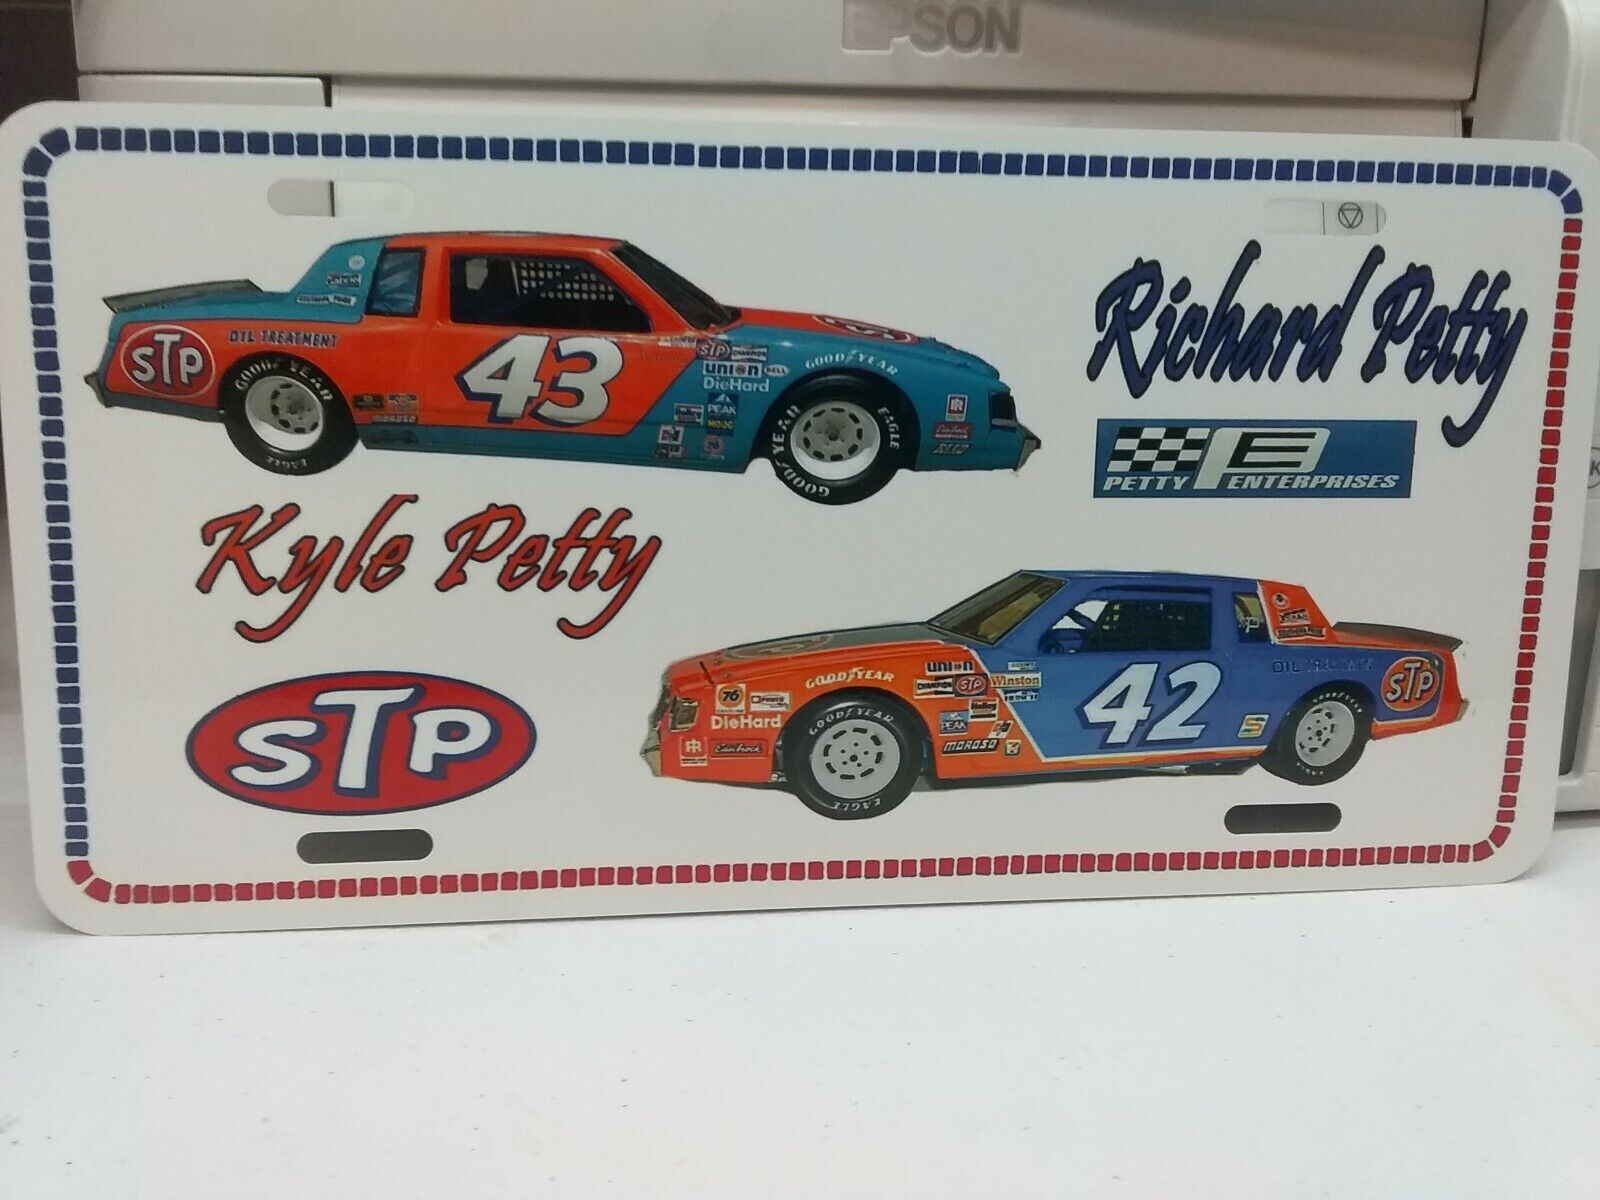 Vintage looking STP Racing Team 42/43 Kyle /Richard PETTY - License Plate  1981 